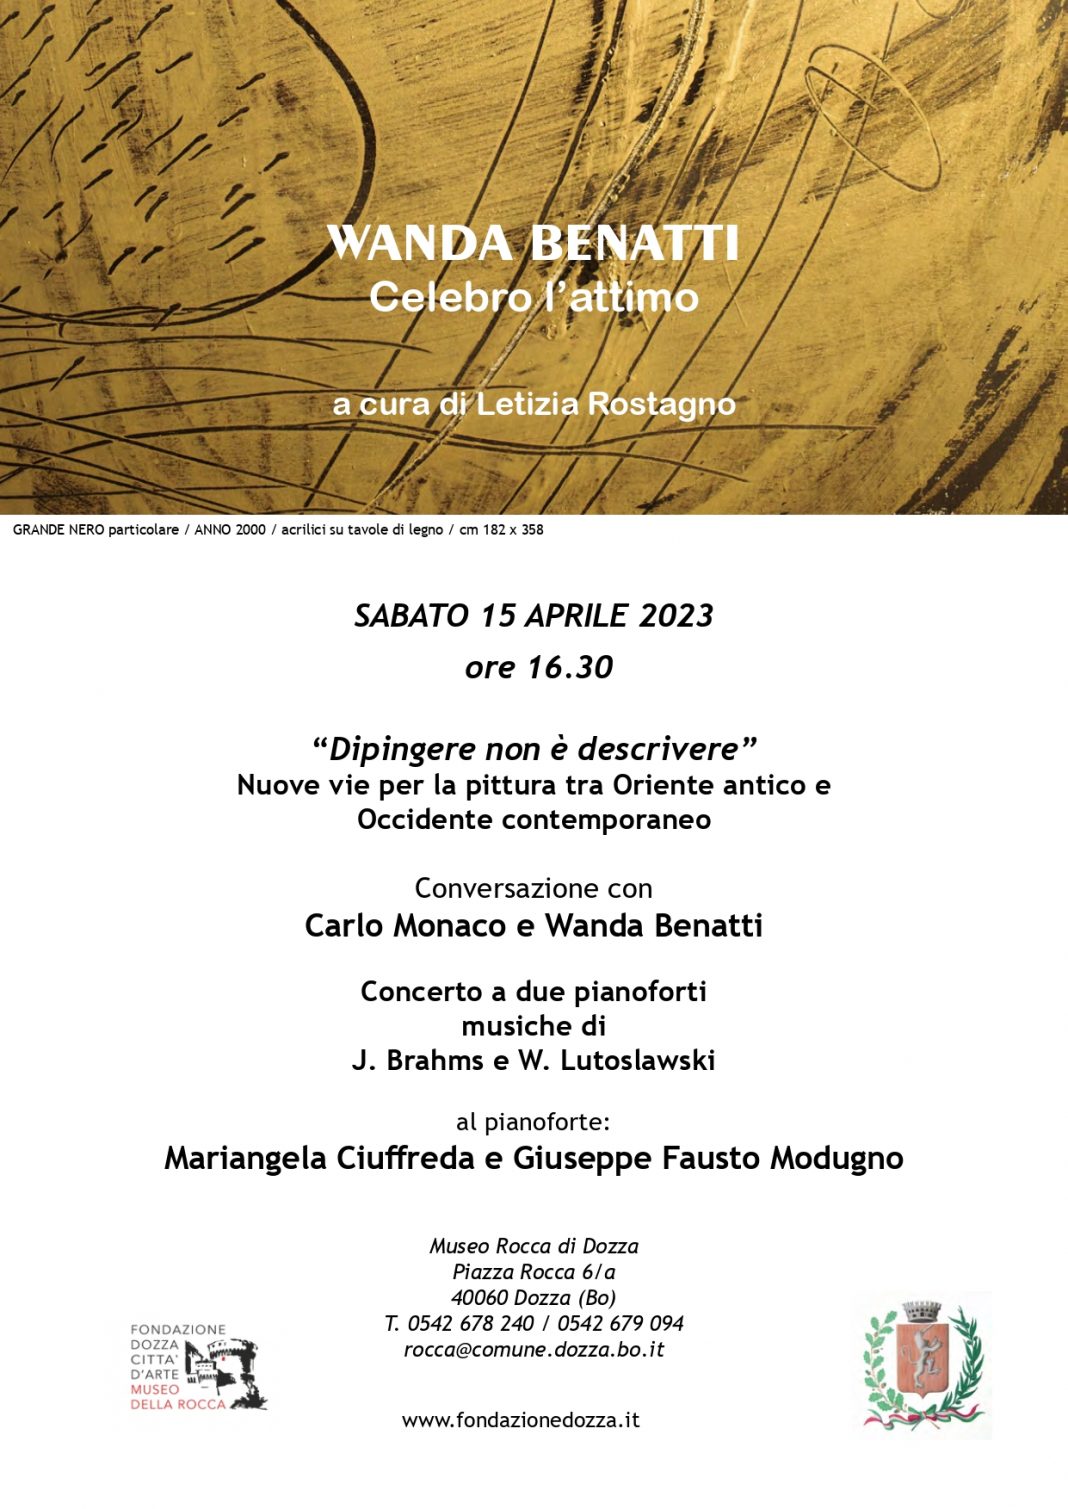 Conversazione con Carlo Monaco e Wanda Benattihttps://www.exibart.com/repository/media/formidable/11/img/d48/LOCANDINA-15-aprile-2023_page-0001-1068x1509.jpg